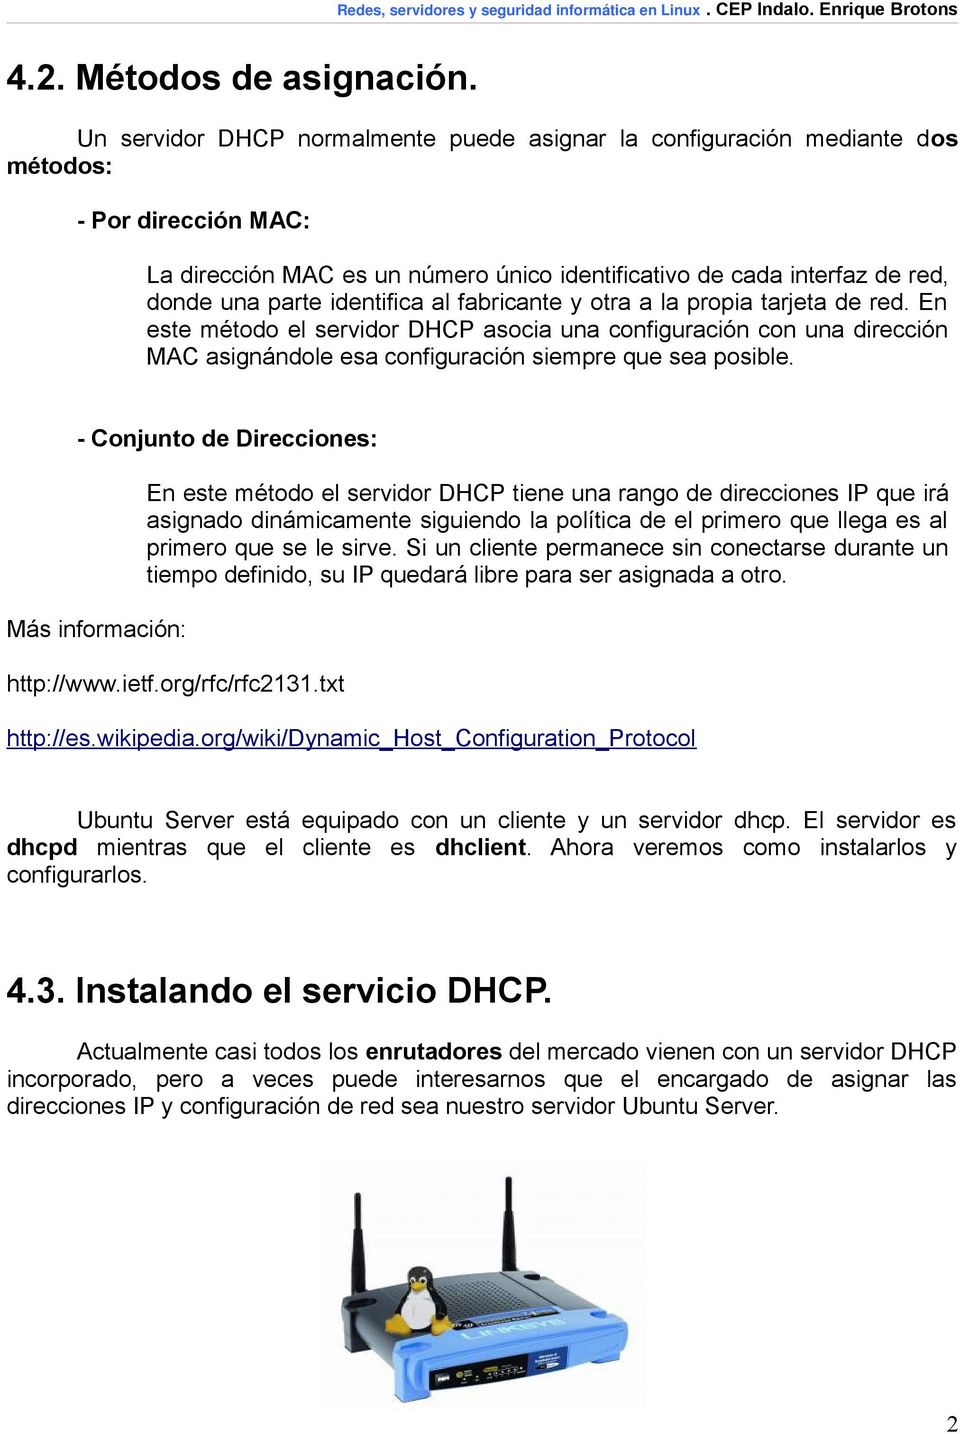 identifica al fabricante y otra a la propia tarjeta de red. En este método el servidor DHCP asocia una configuración con una dirección MAC asignándole esa configuración siempre que sea posible.